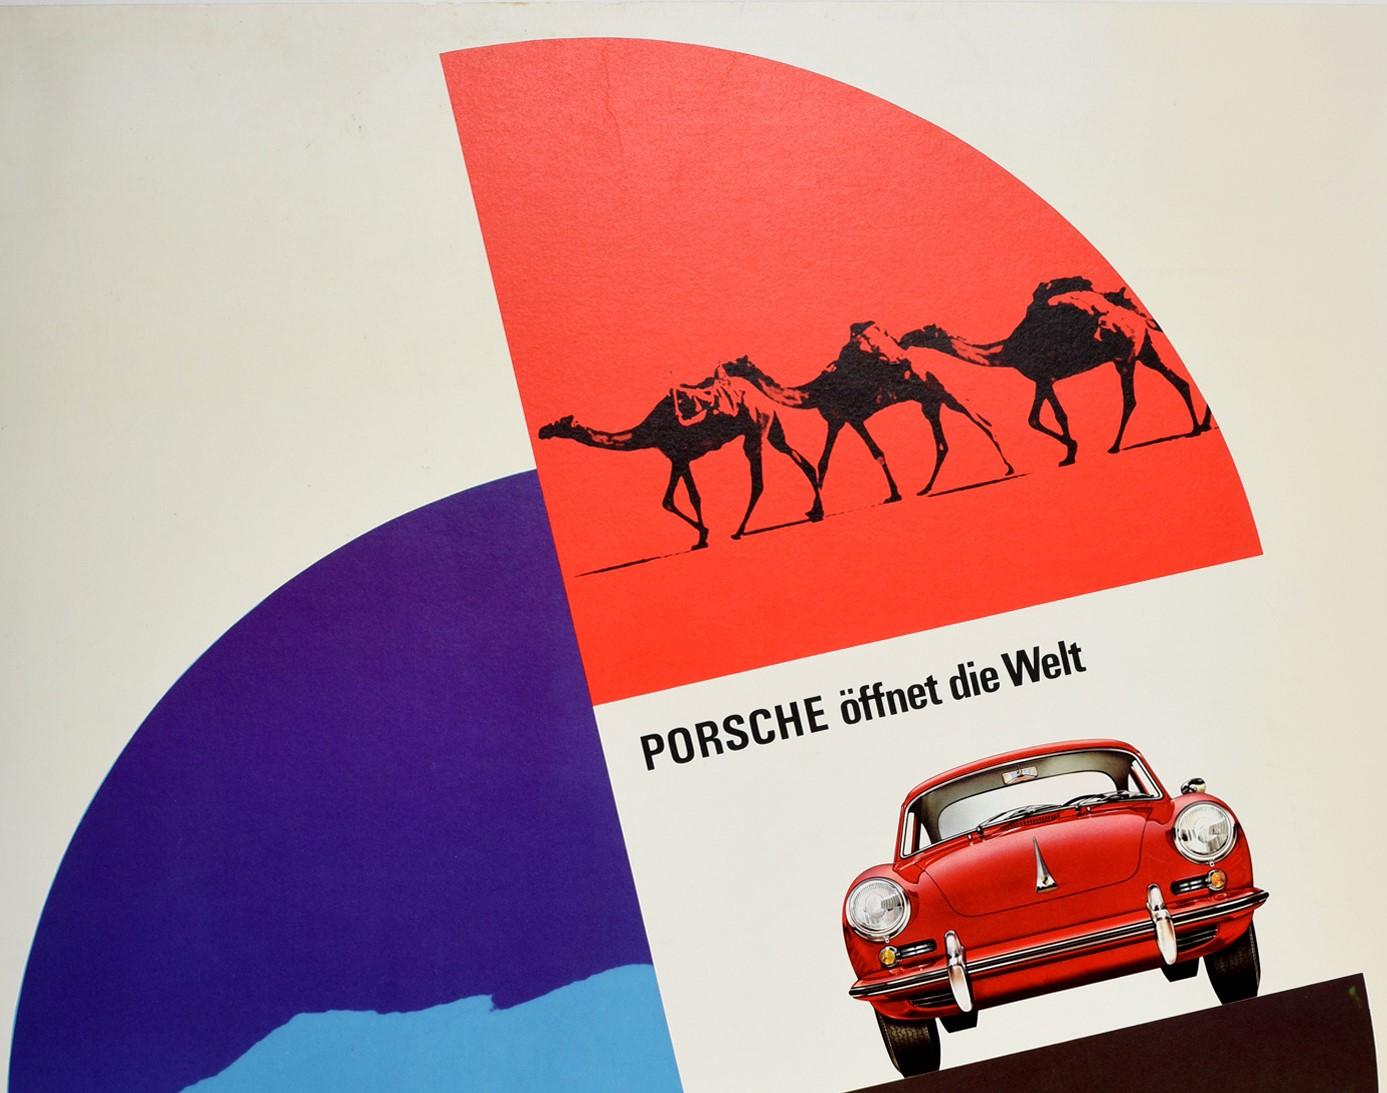 Originales, seltenes, frühes Oldtimer-Werbeplakat für Porsche - Offnet die Welt - mit einem kühnen grafischen Entwurf von Hanns Lohrer (1912-1995), der in den 1950er- und 1960er-Jahren weltweit an der visuellen Identität der Marke Porsche arbeitete.